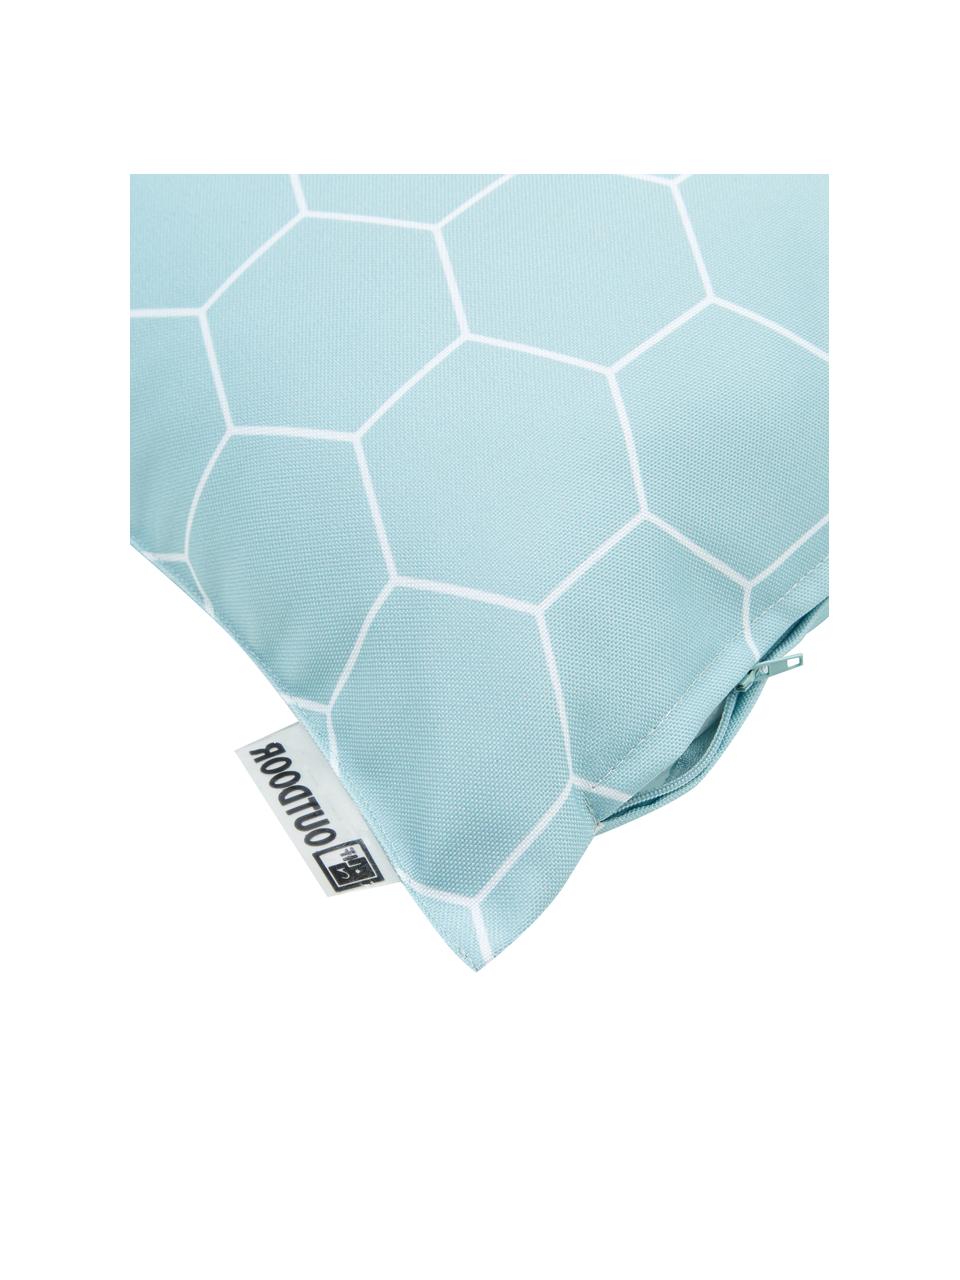 Outdoor kussen met patroon Honeycomb, 100% polyester, Blauw, wit, 47 x 47 cm